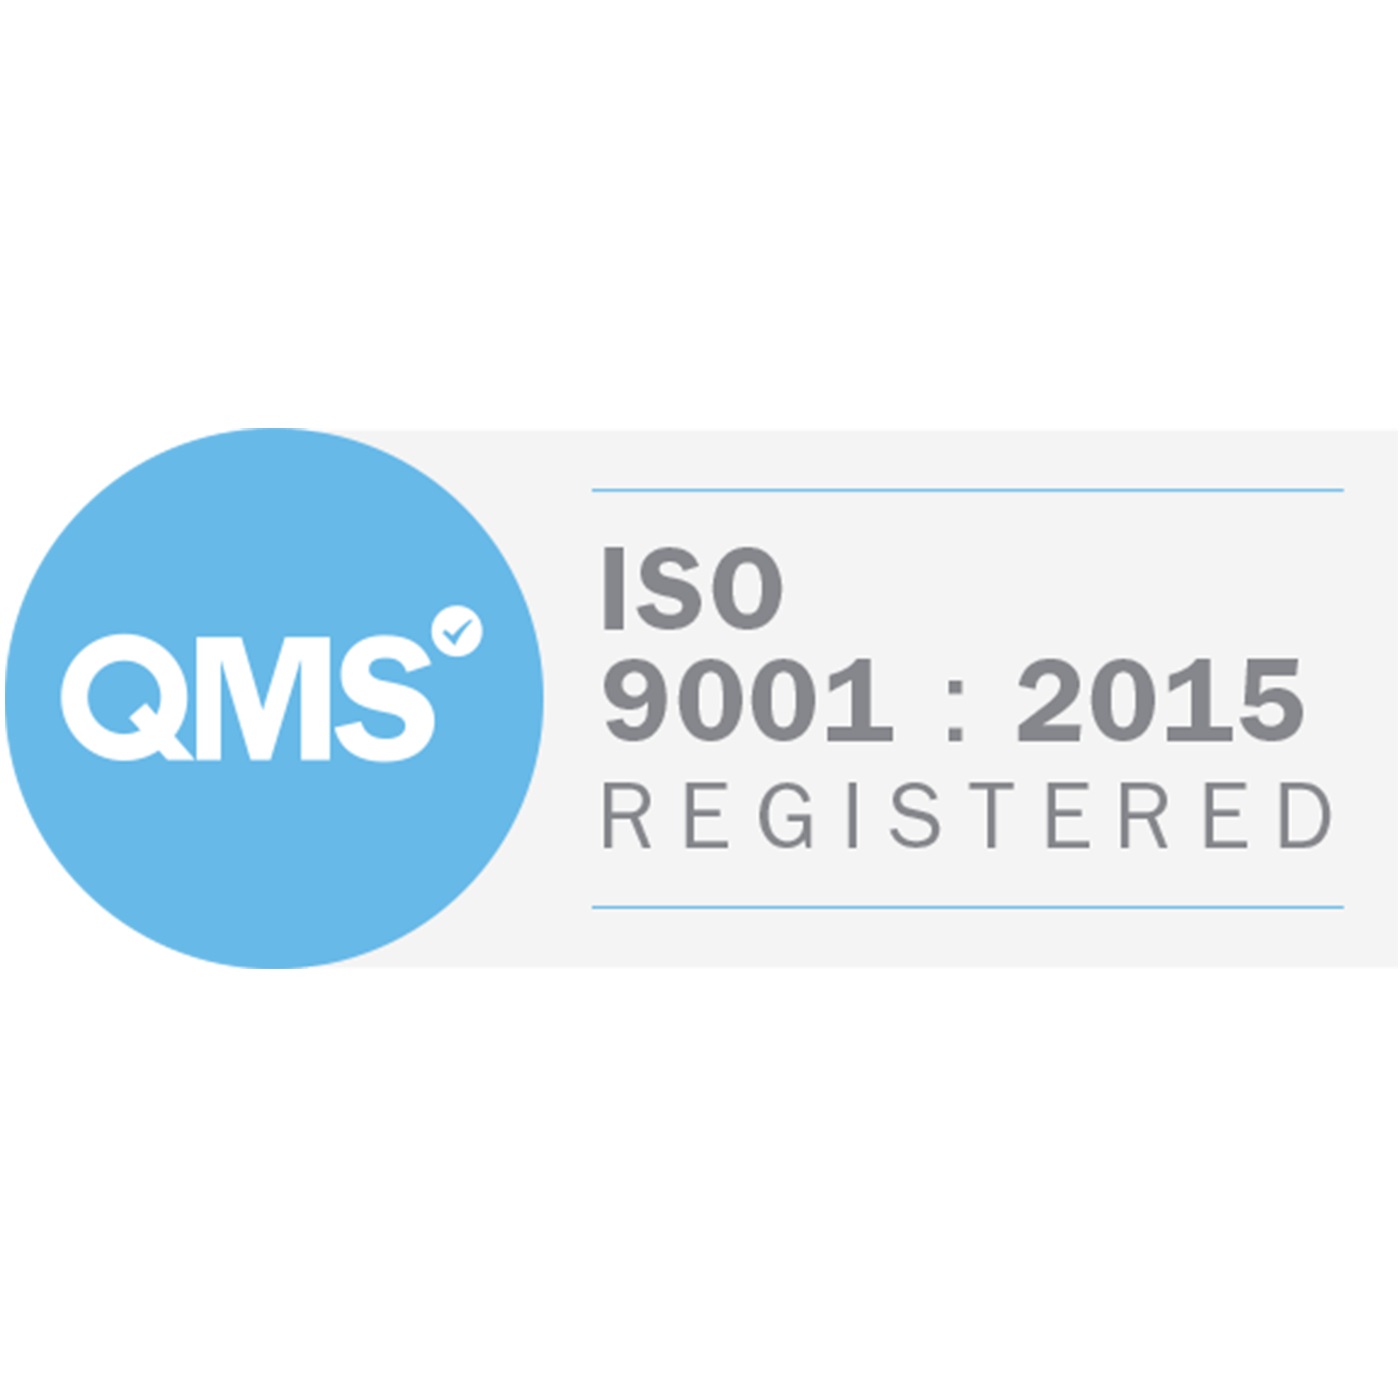 qms registered logo.png